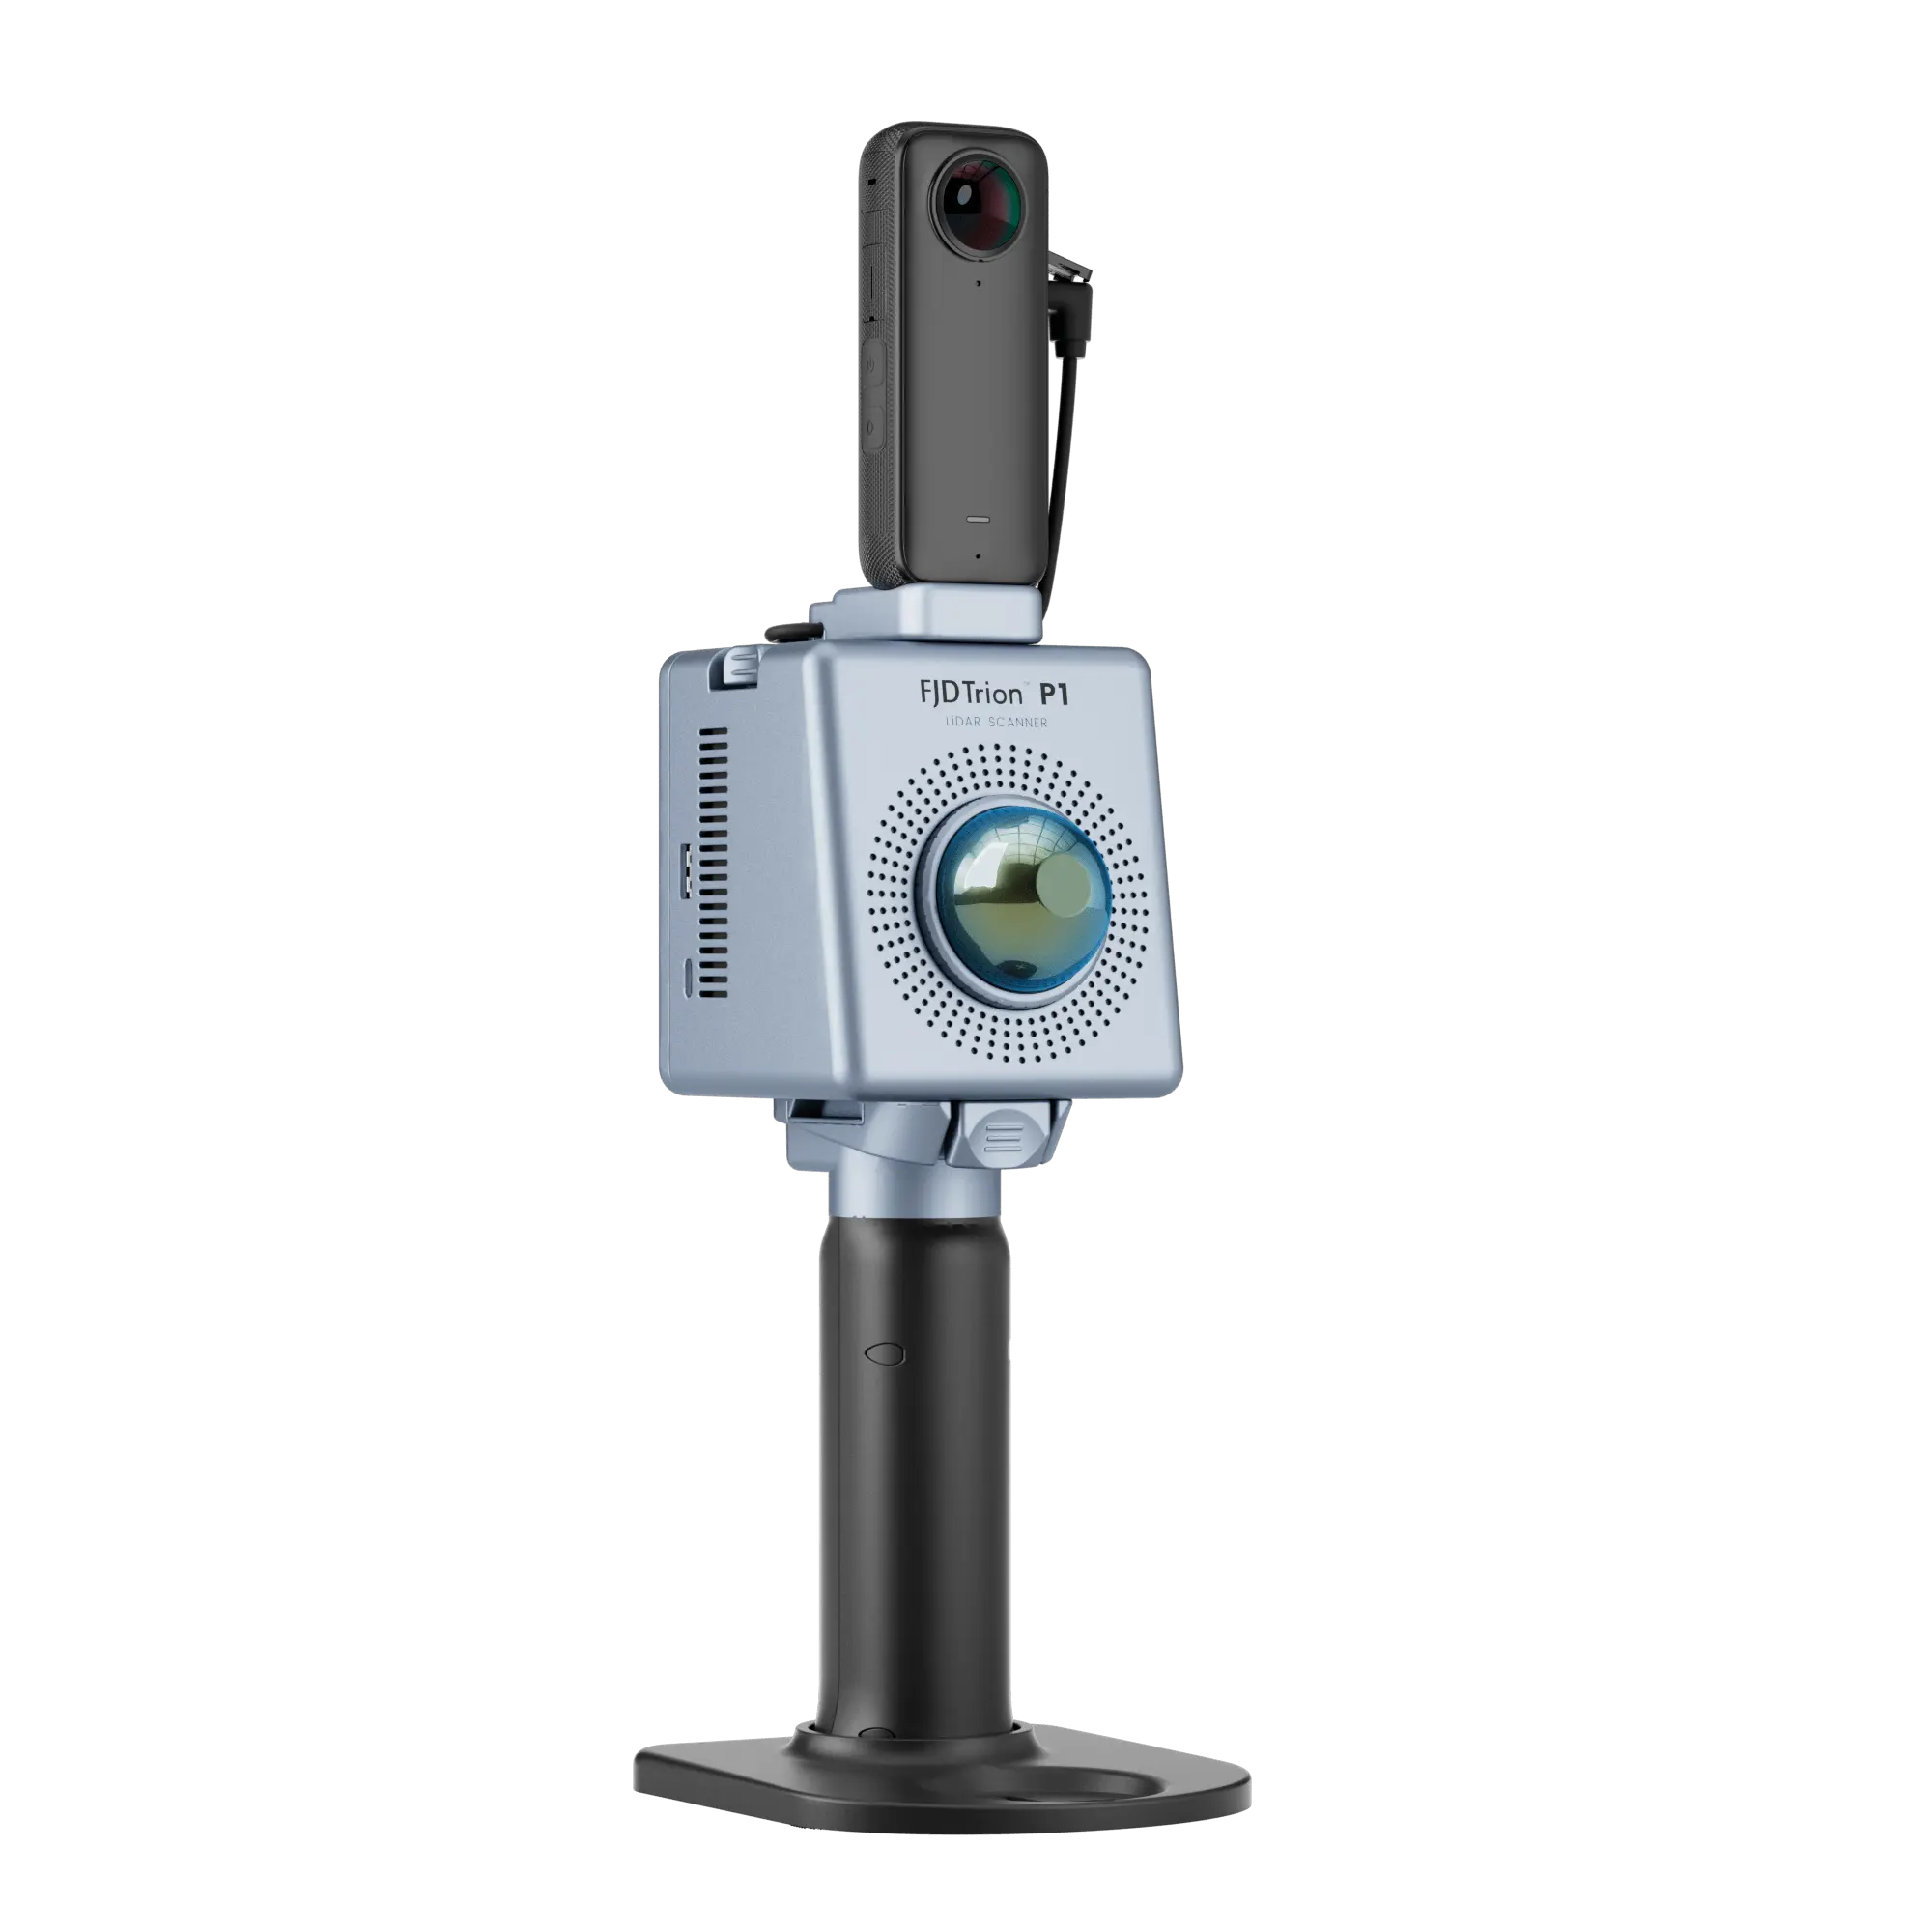 Escáner LiDAR de mano 3D FJD Trion P1